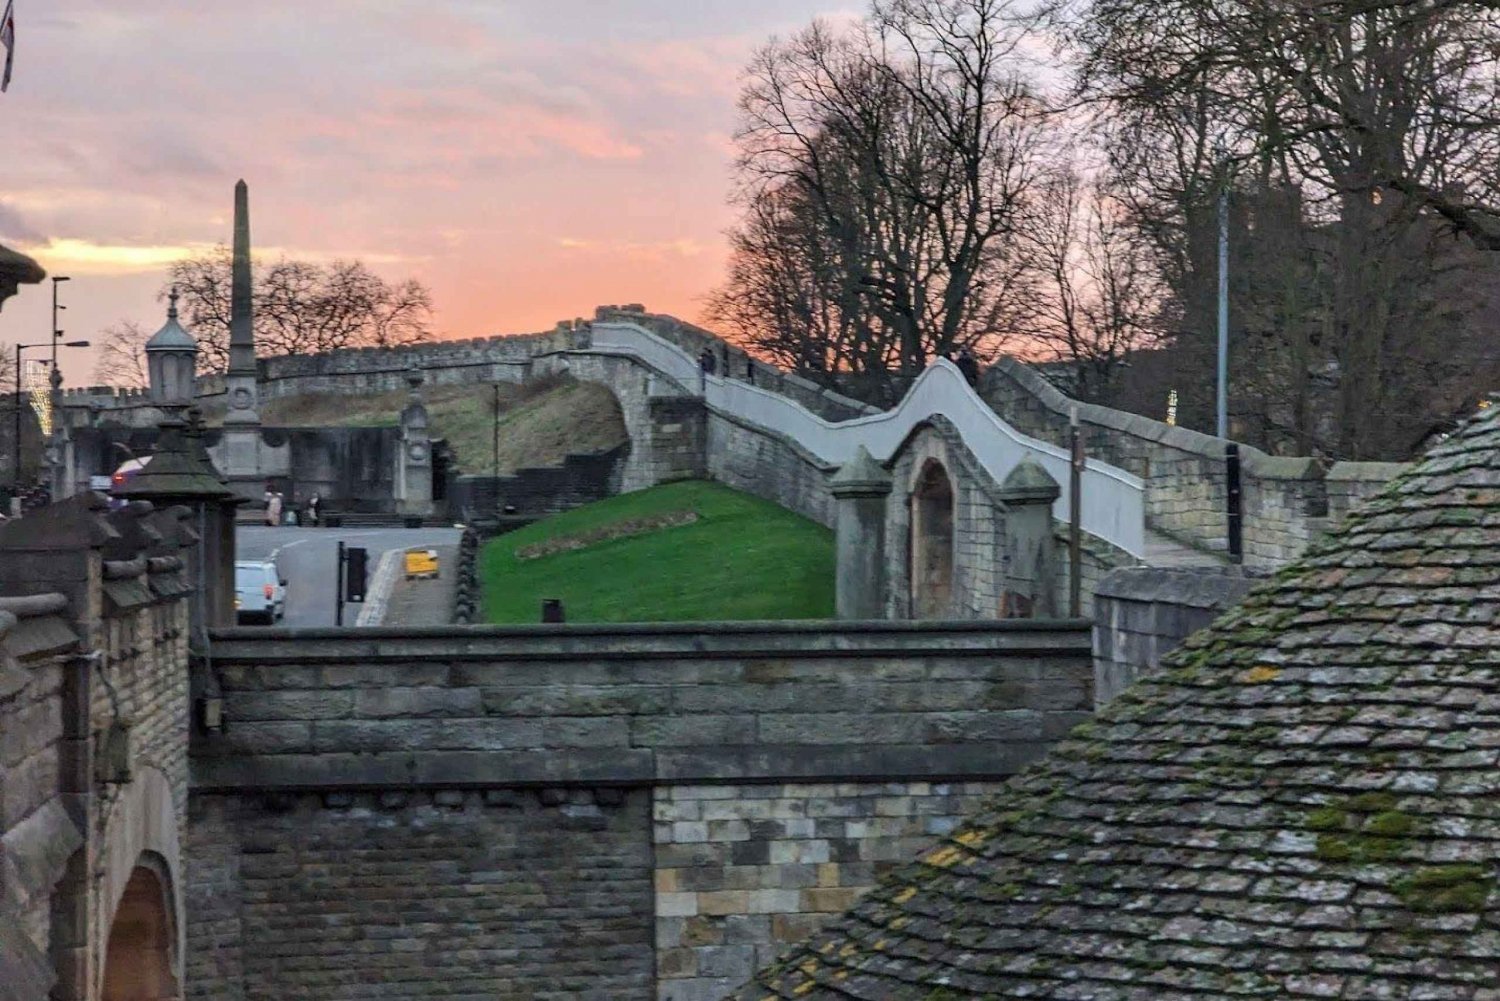 Scopri l'eredità di York: tour audio in app delle mura della città